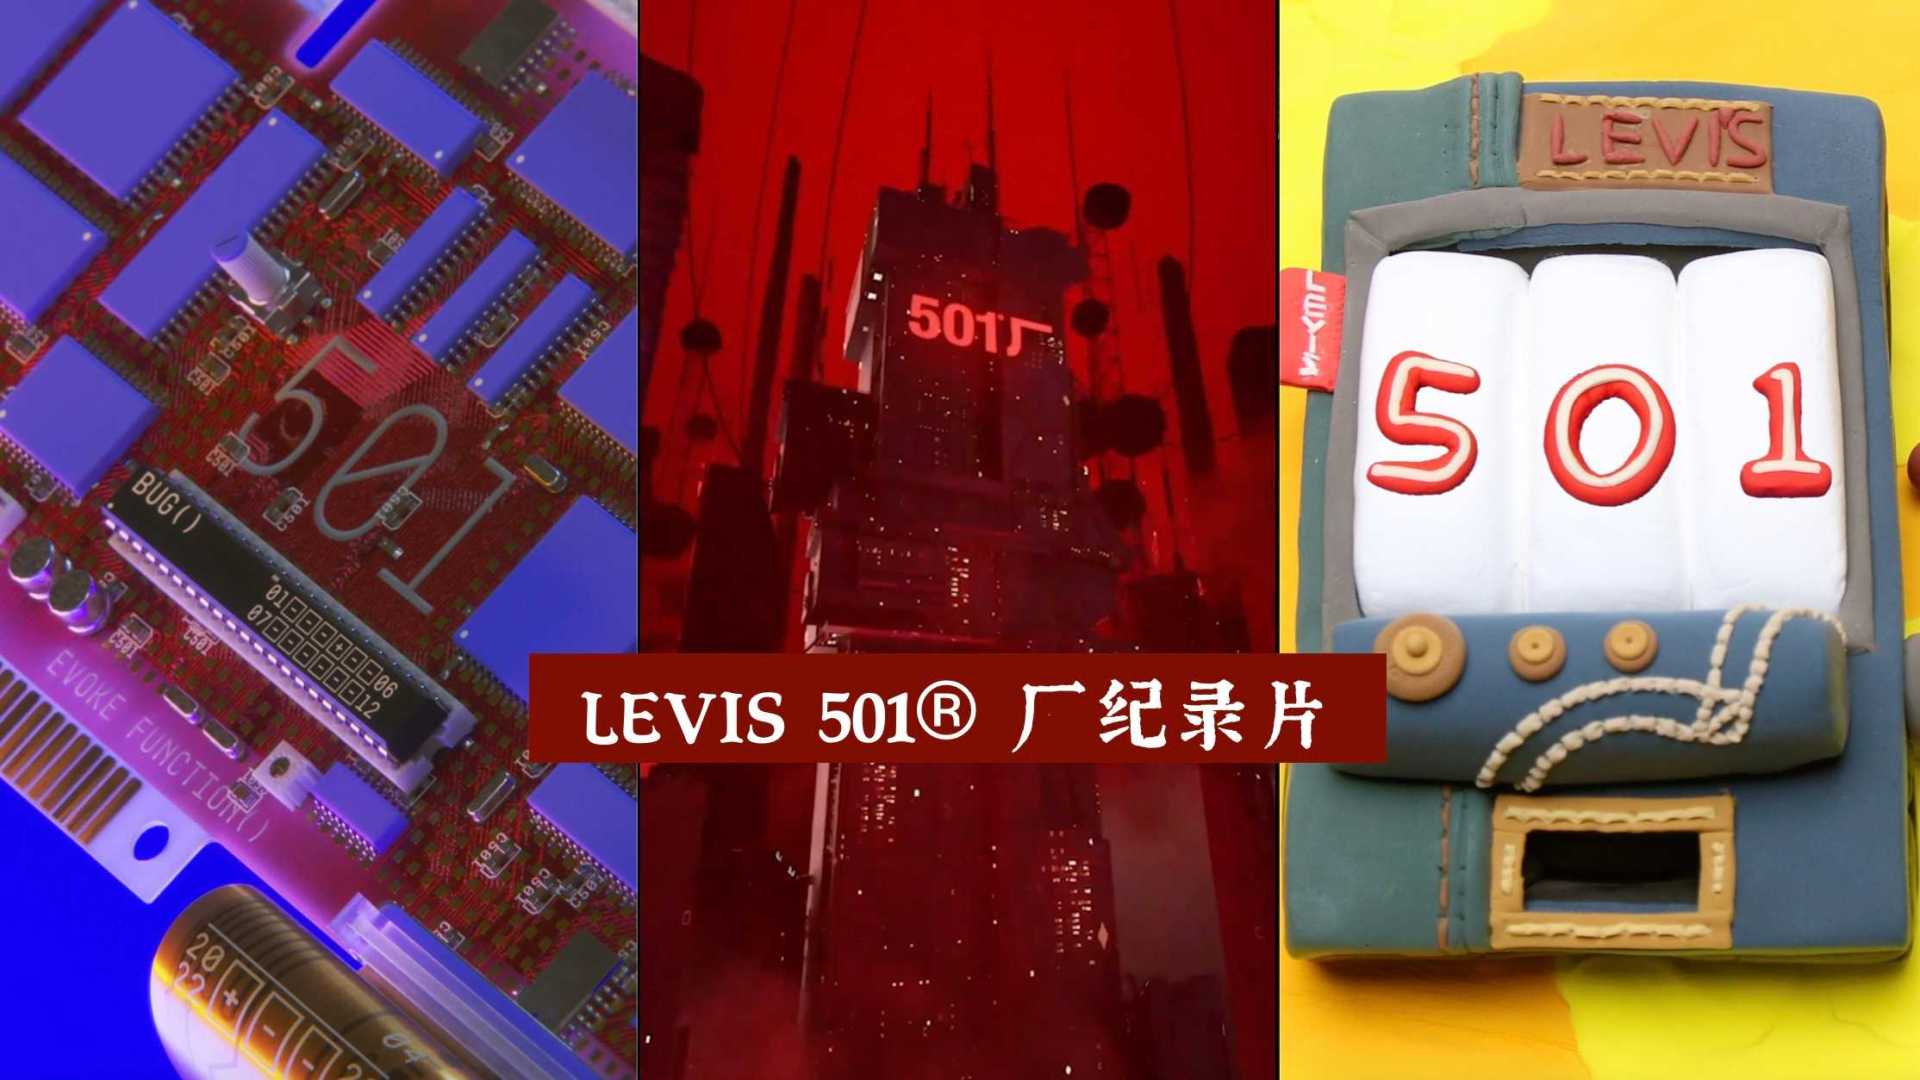 LEVIS 501® 厂纪录片